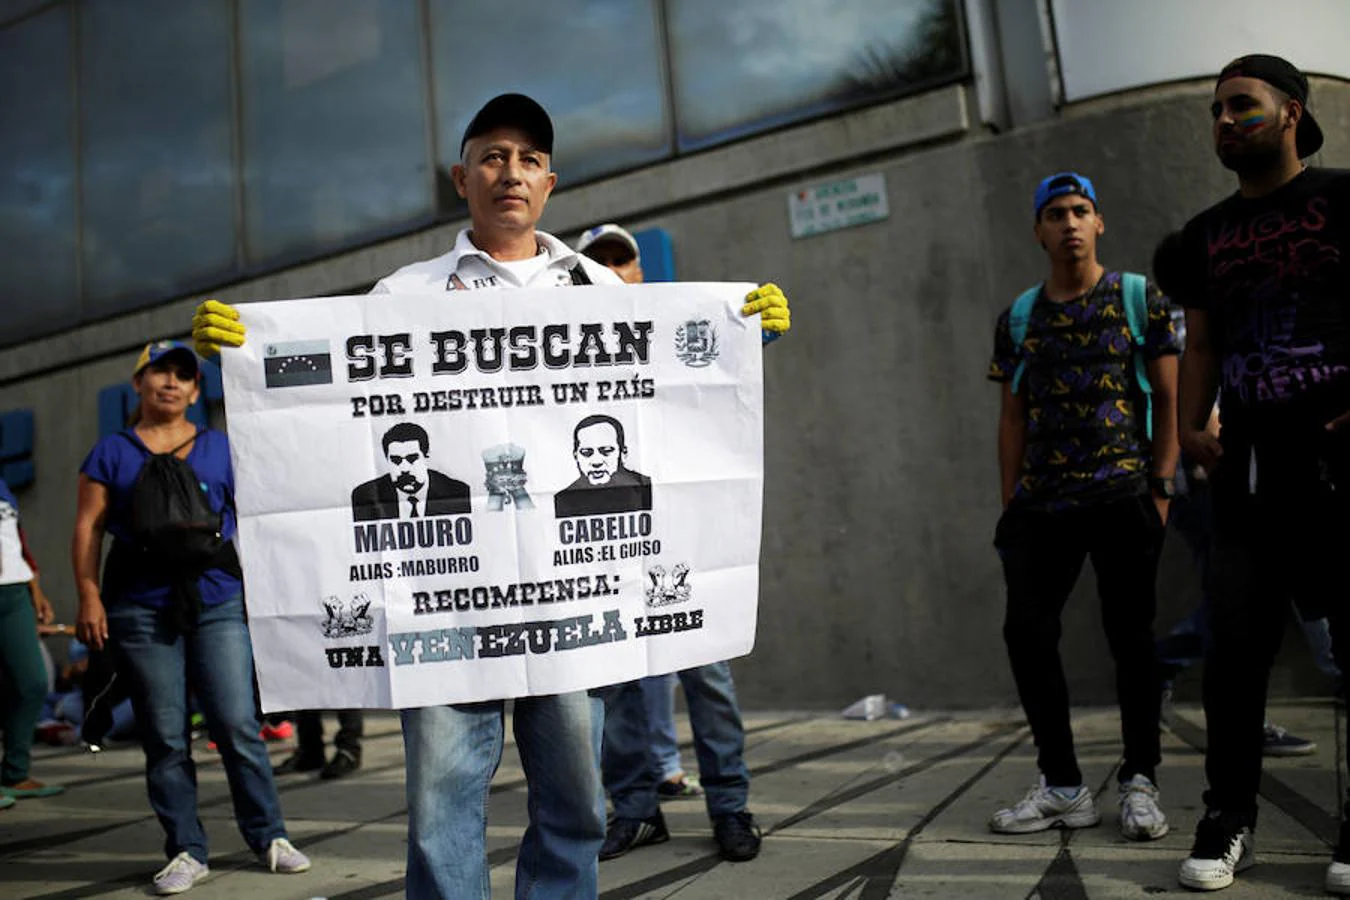 «Se buscan por destruir un país», reza el cartel que sostiene un venezola junto con los rostros de Nicolás Maduro y Diosdado Cabello